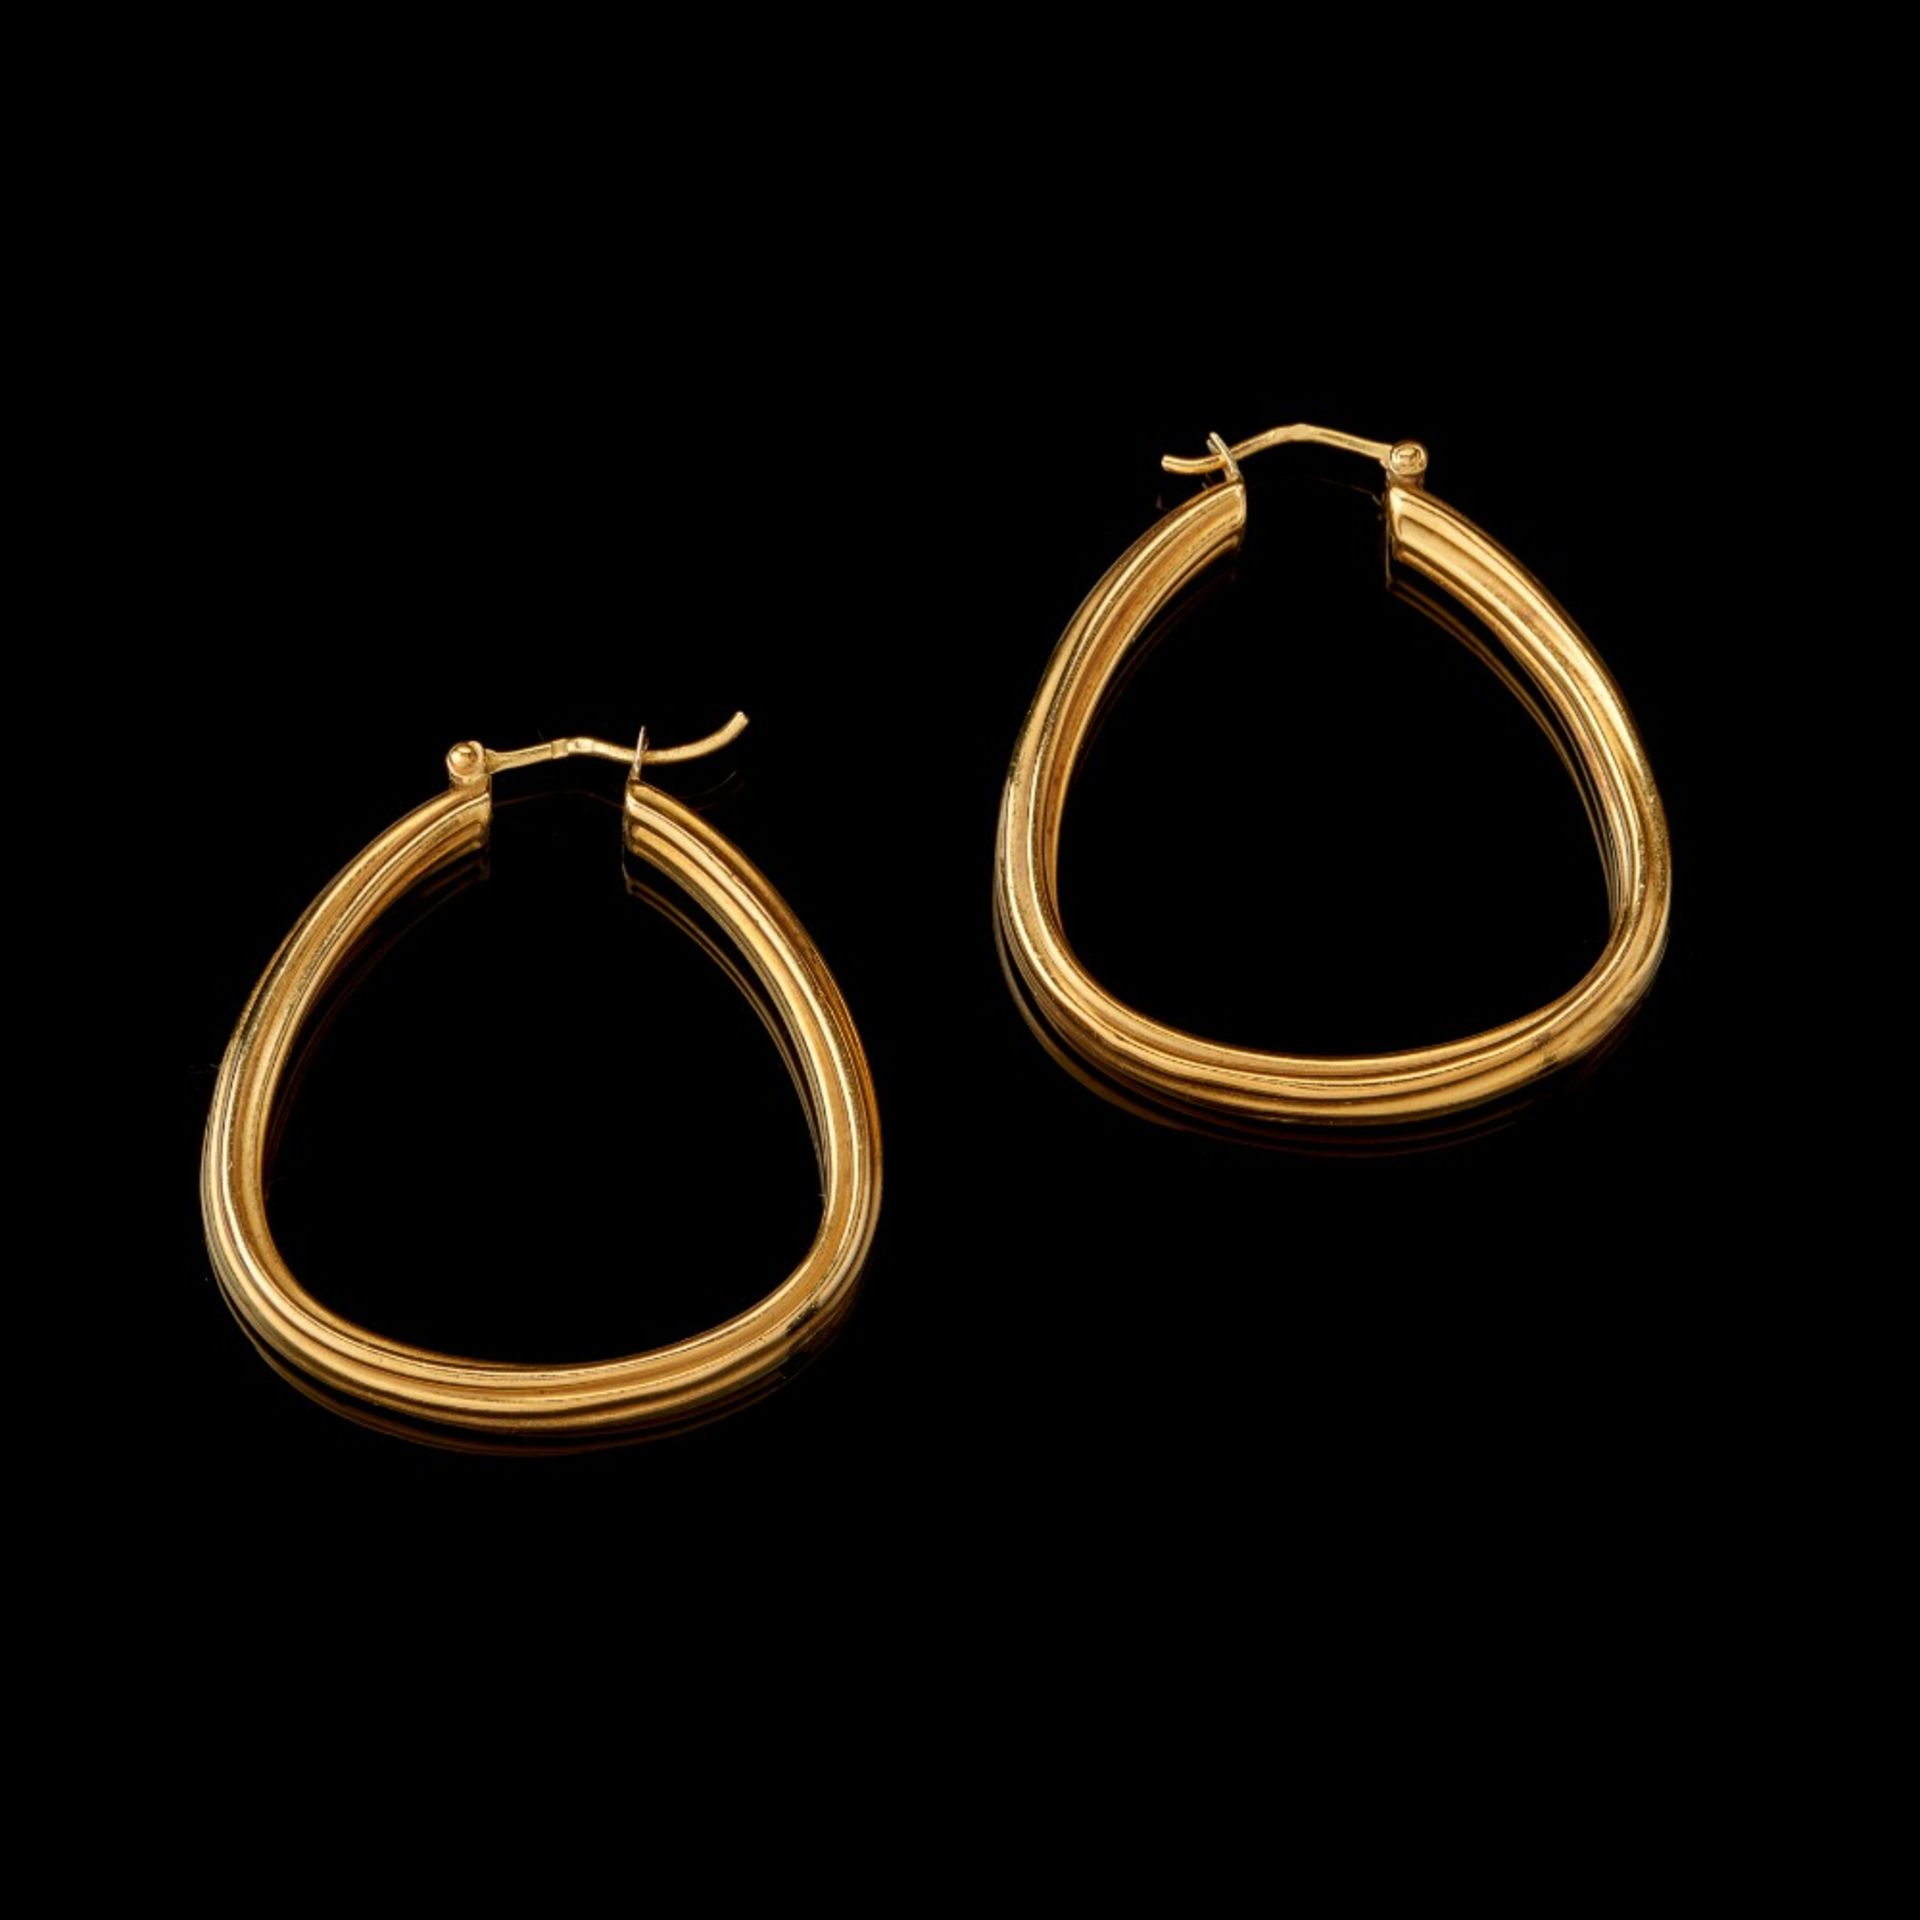  A pair of hoop earrings